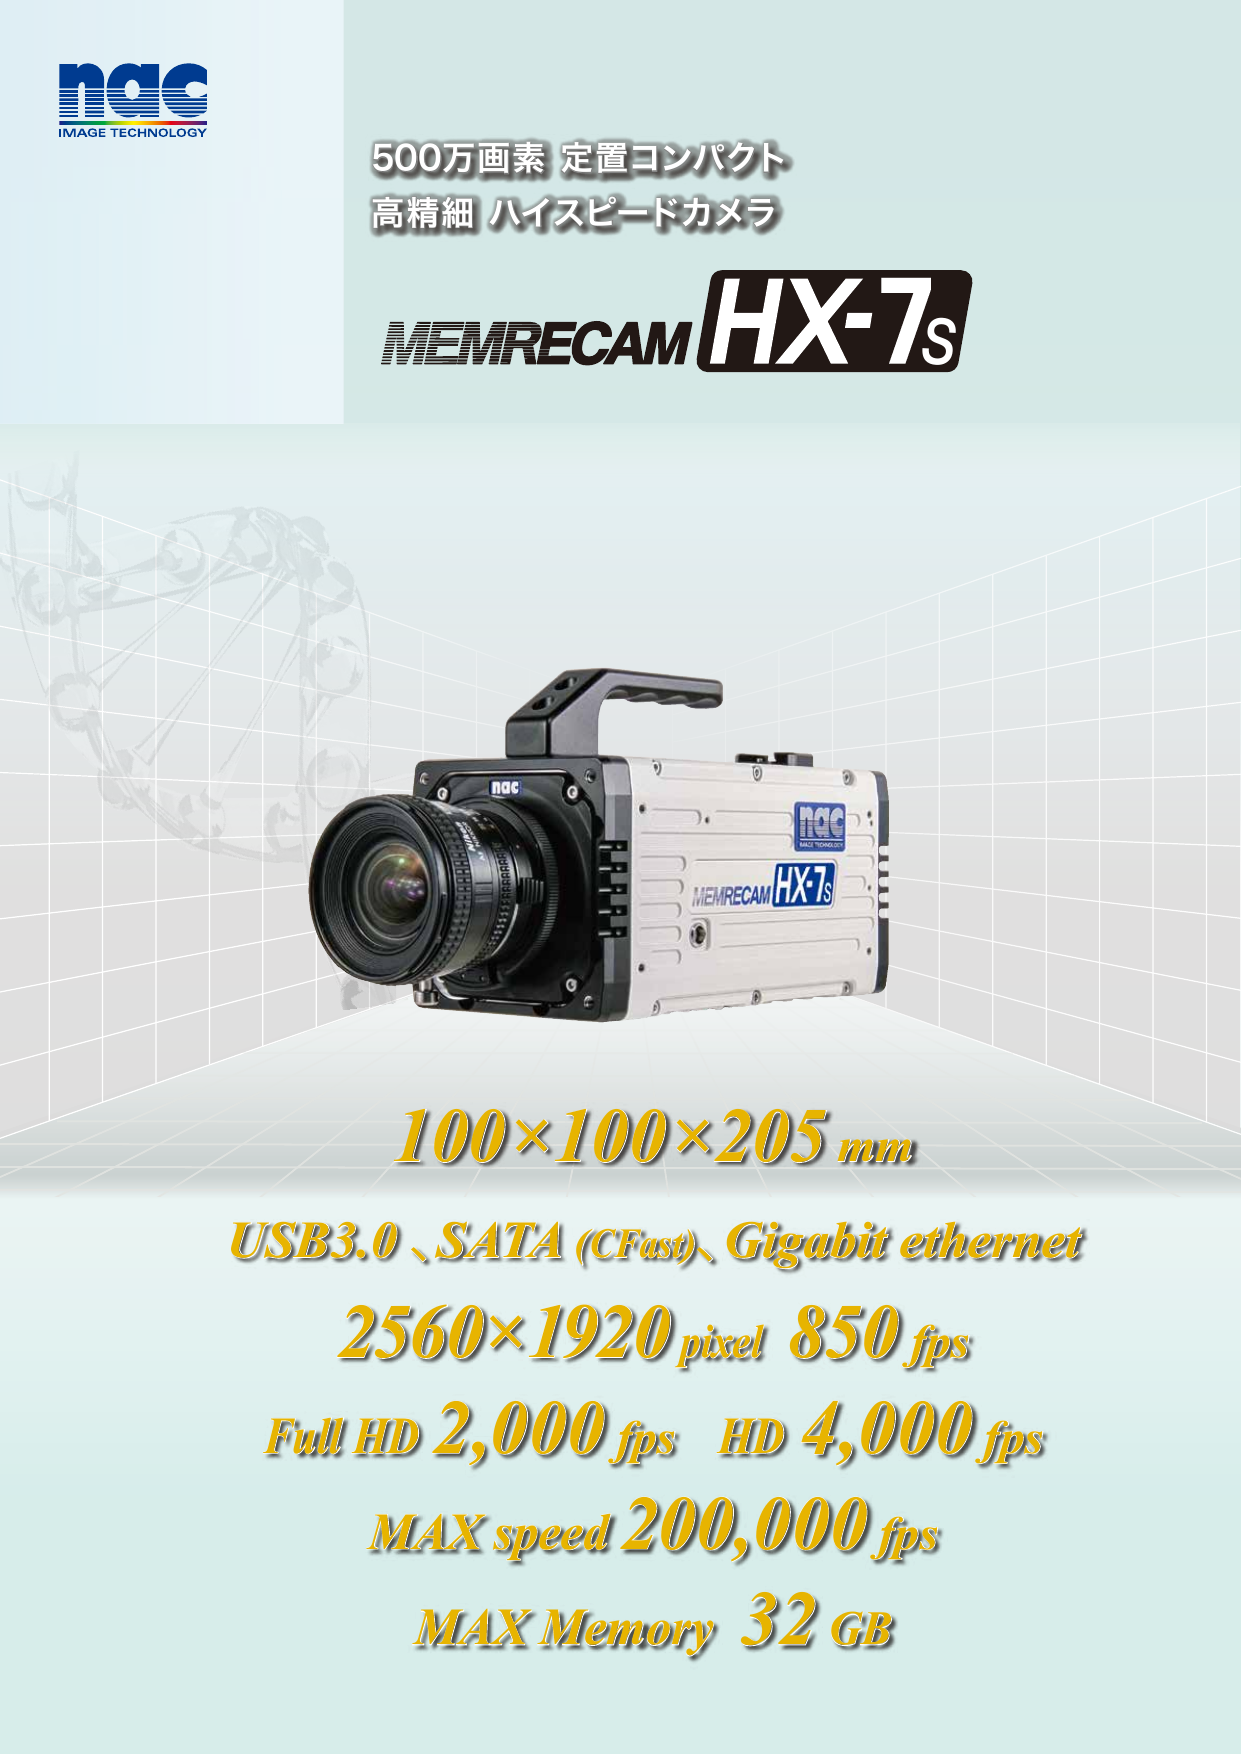 ハイスピードカメラmemrecam Hx 7s 製品カタログ 株式会社ナックイメージテクノロジー のカタログ無料ダウンロード 製造業向けカタログポータル Aperza Catalog アペルザカタログ